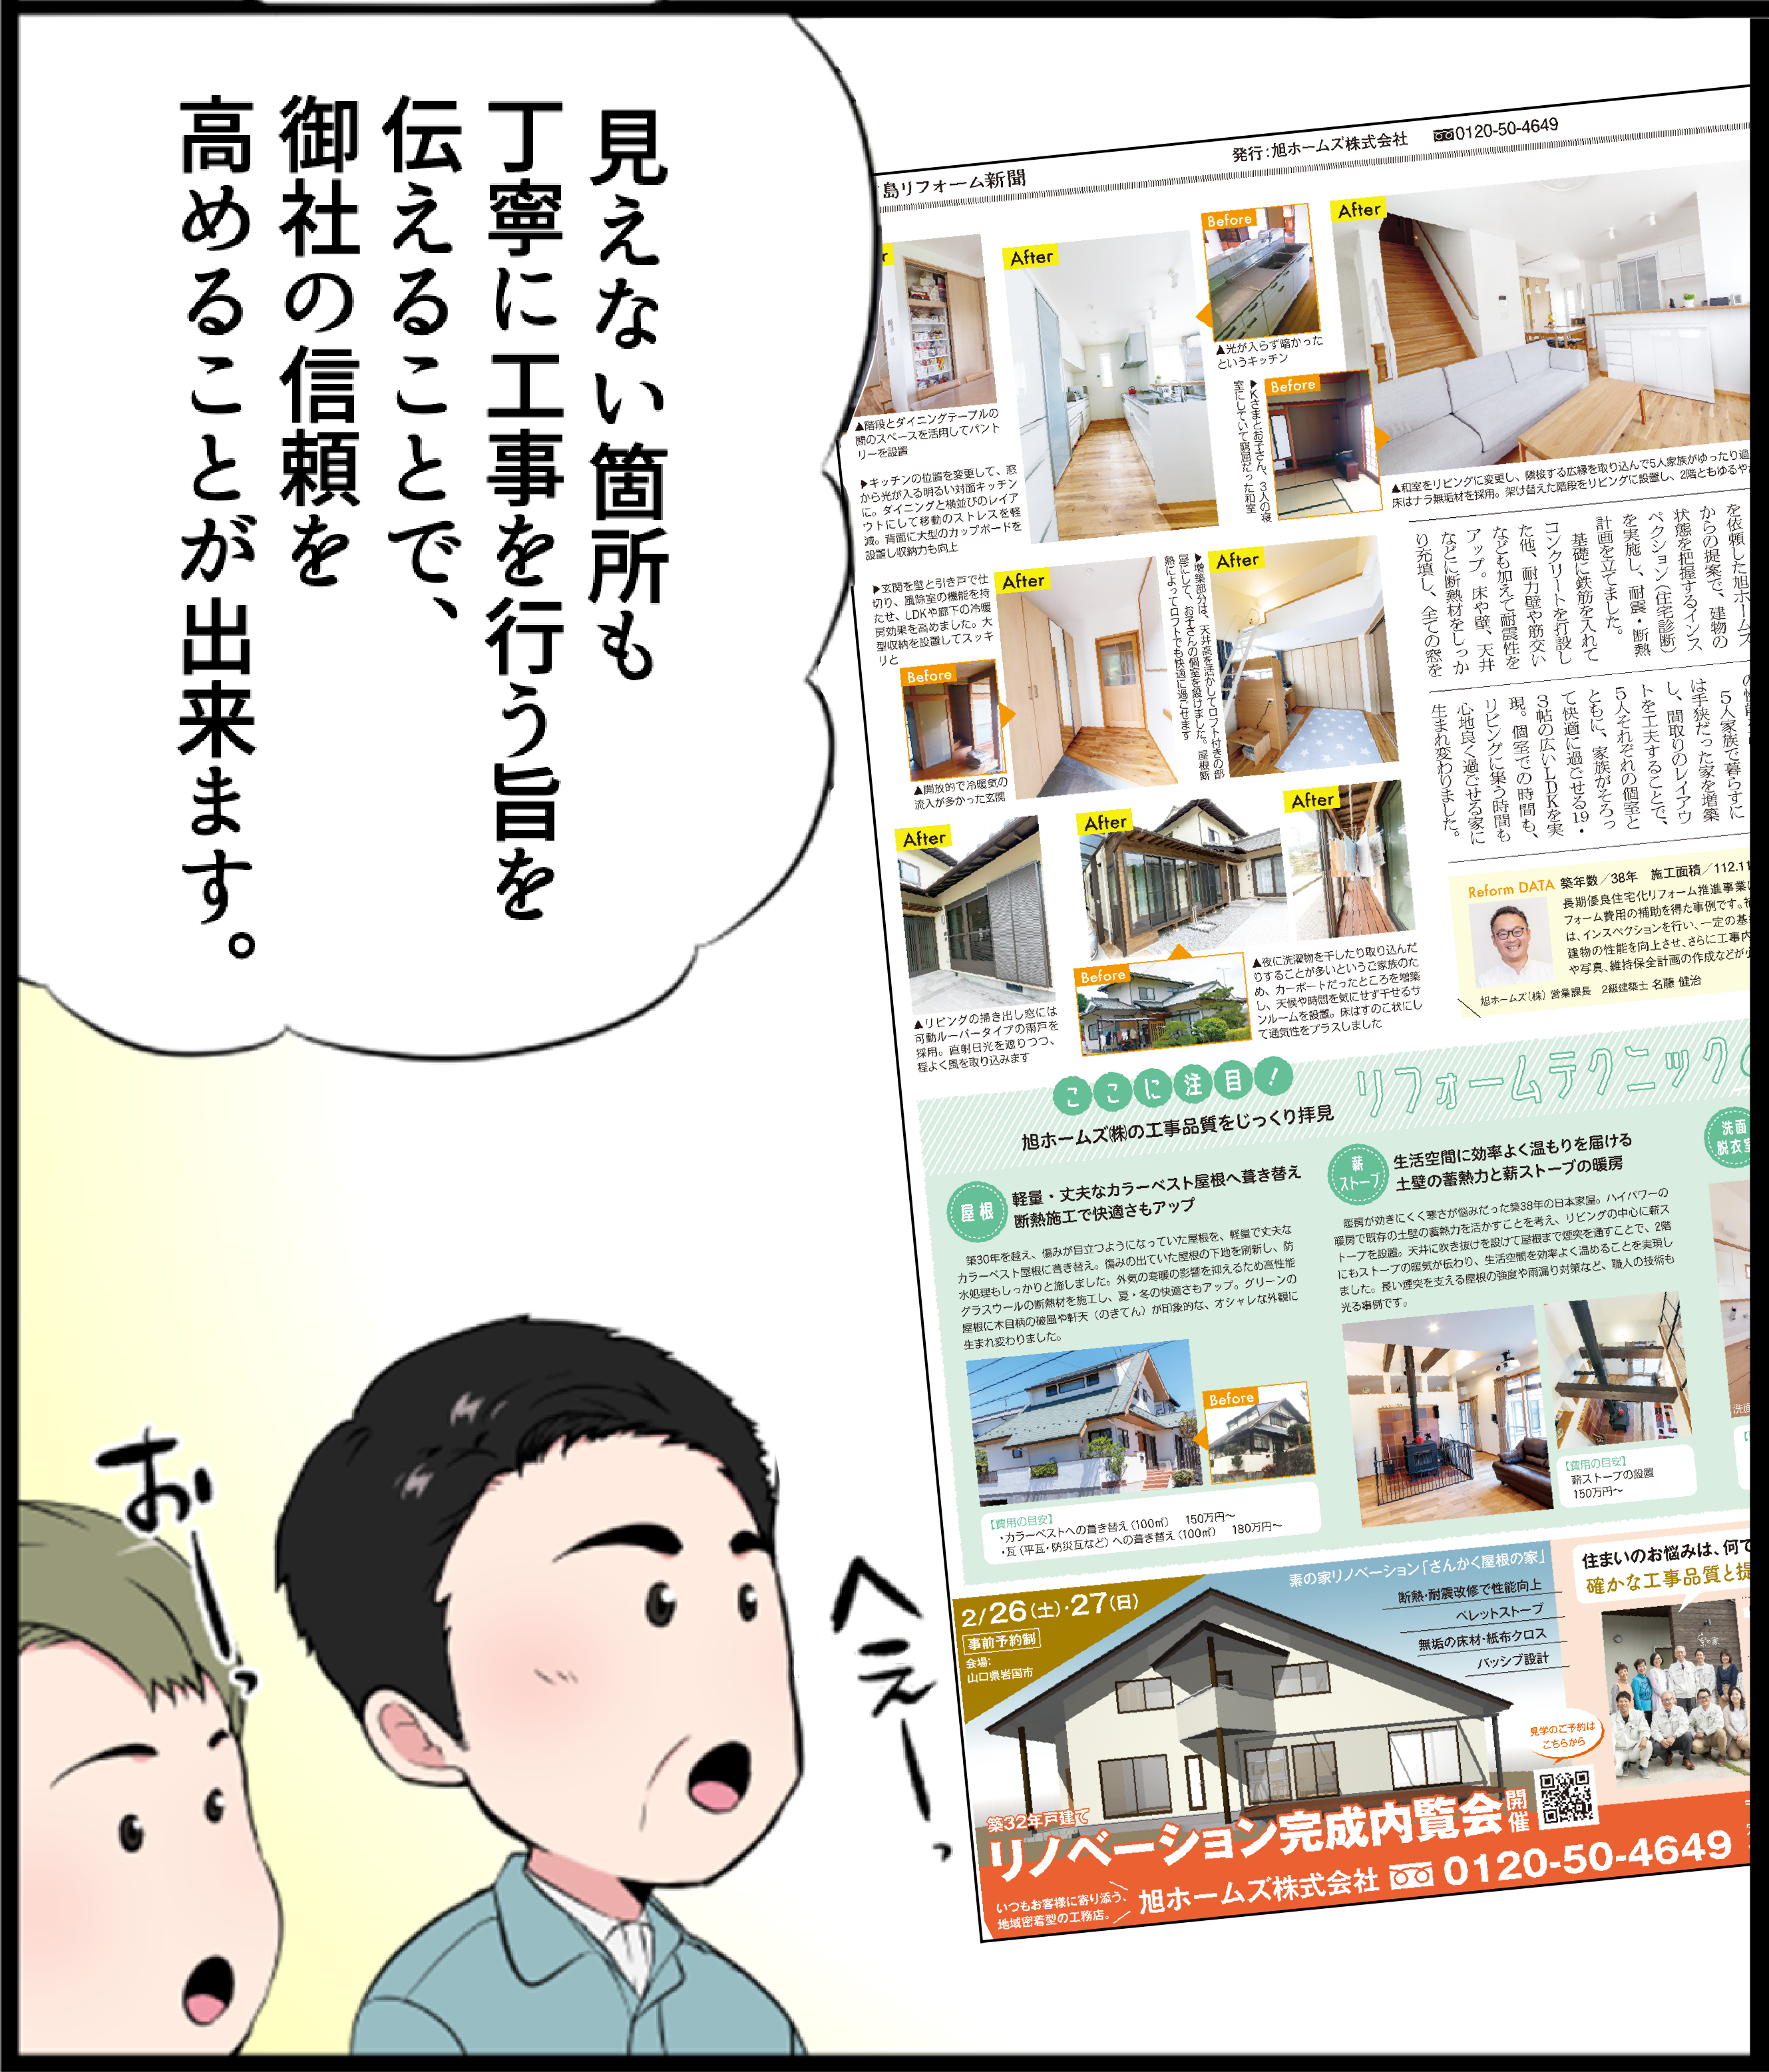 地域リフォーム新聞 漫画説明3_4_2